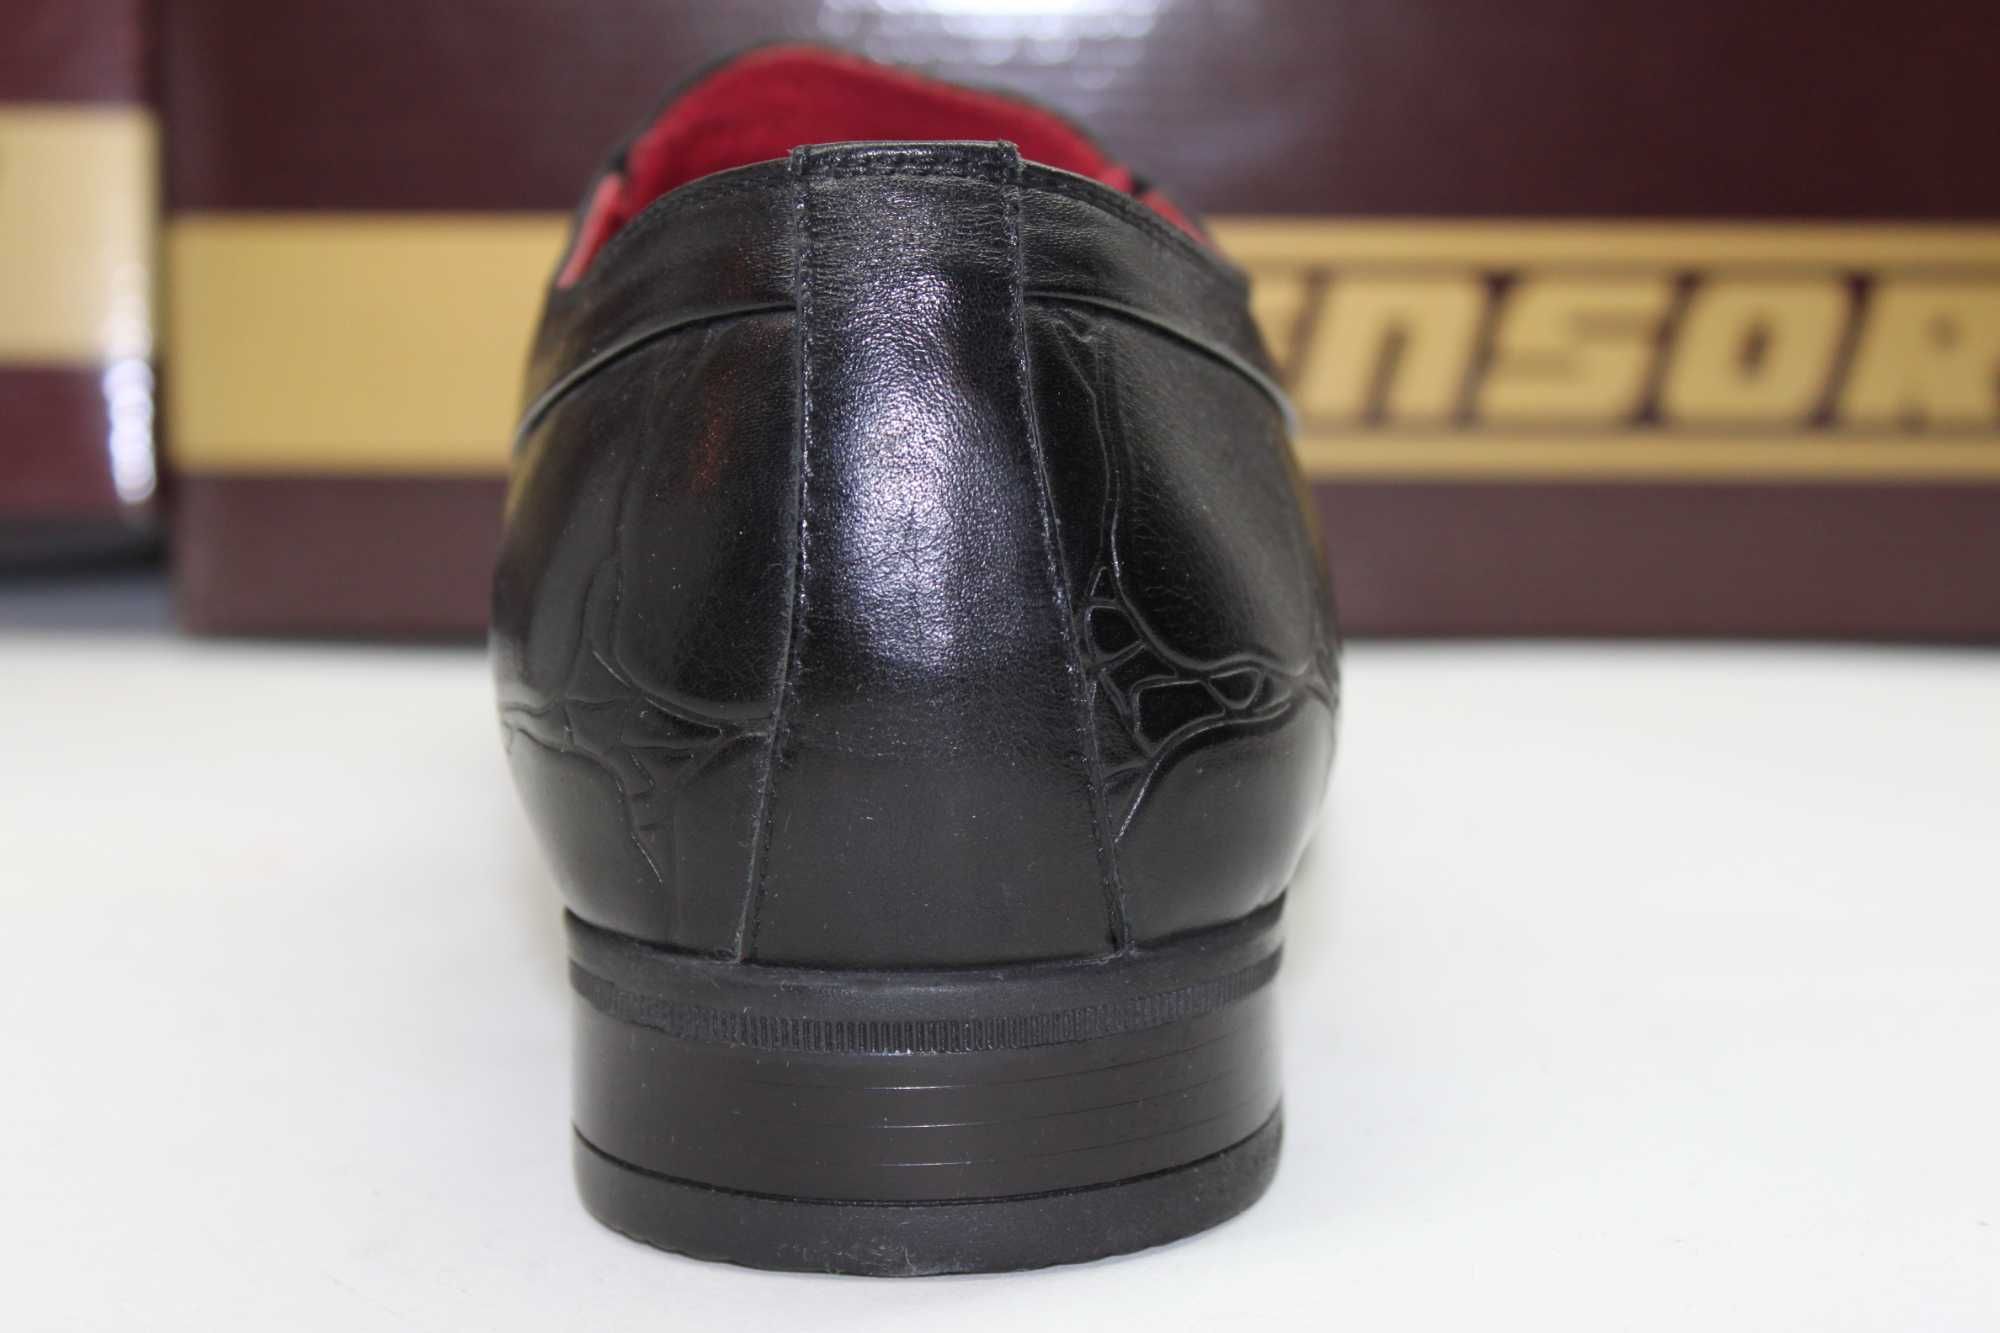 Sensor - демисезонные модельные туфли кожаные оригинал (641-1)